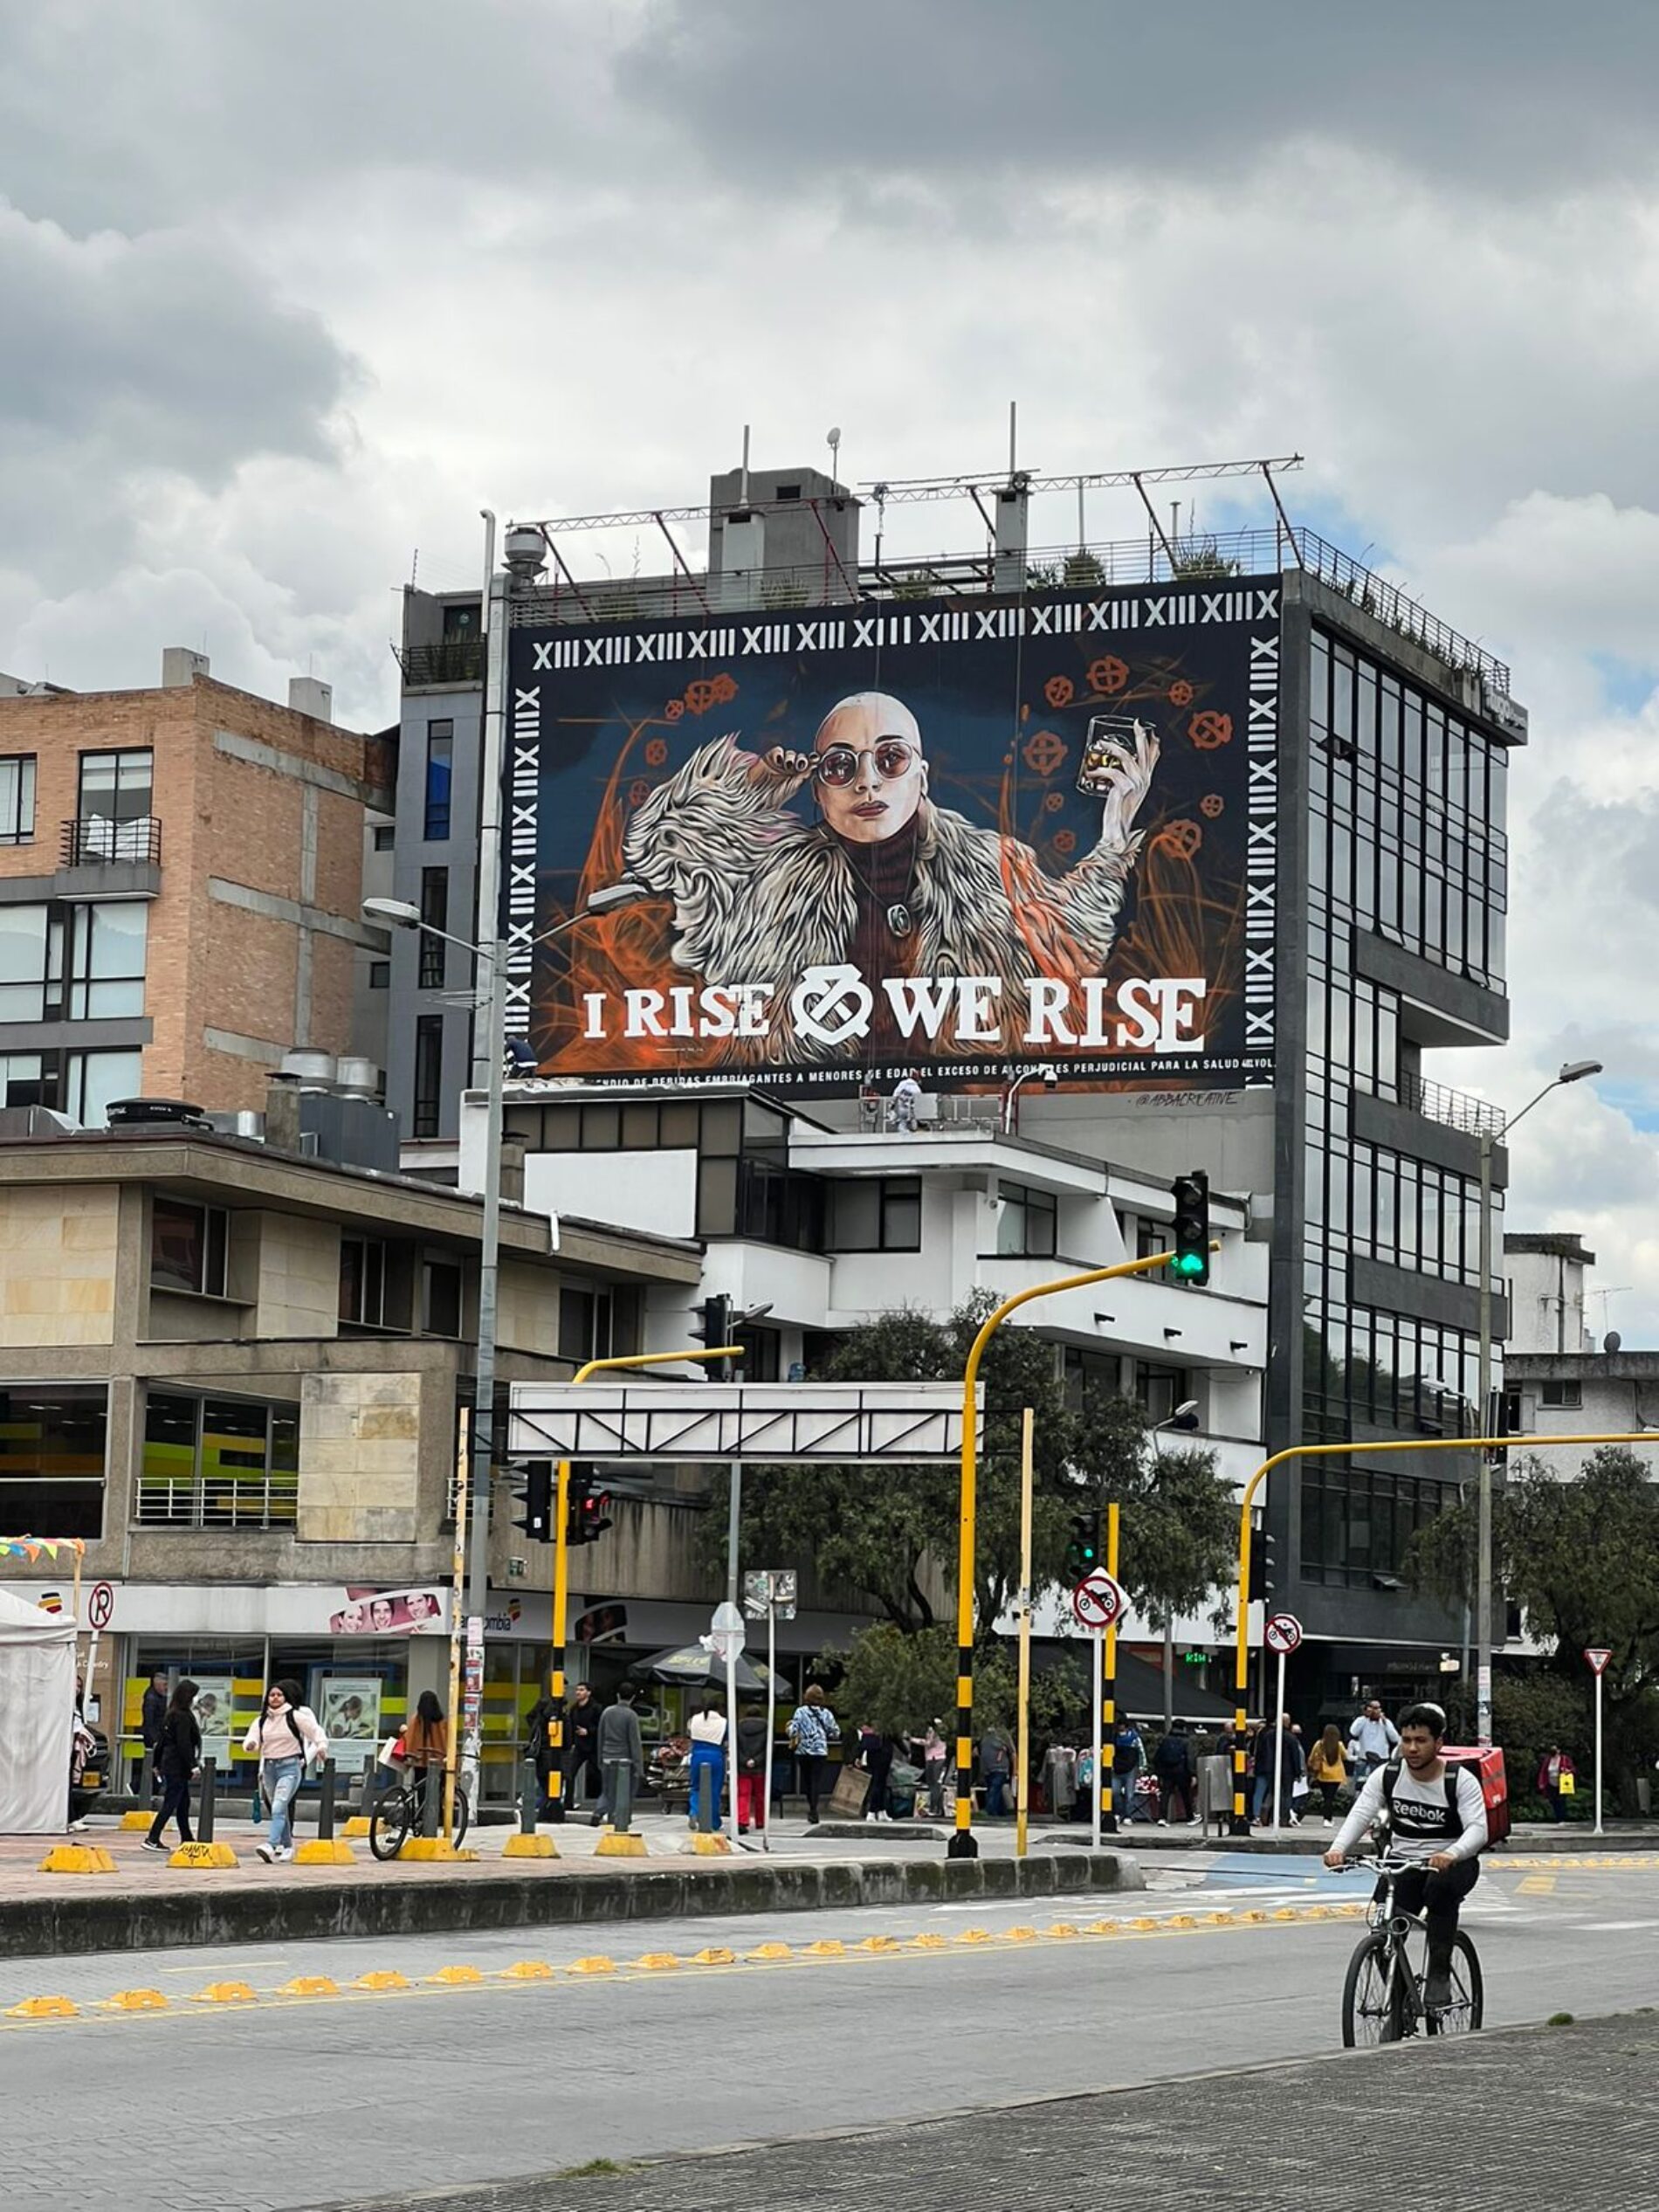 En Bogotá, Medellín y Cali, Chivas Regal le apuesta al arte urbano y a la realidad aumentada